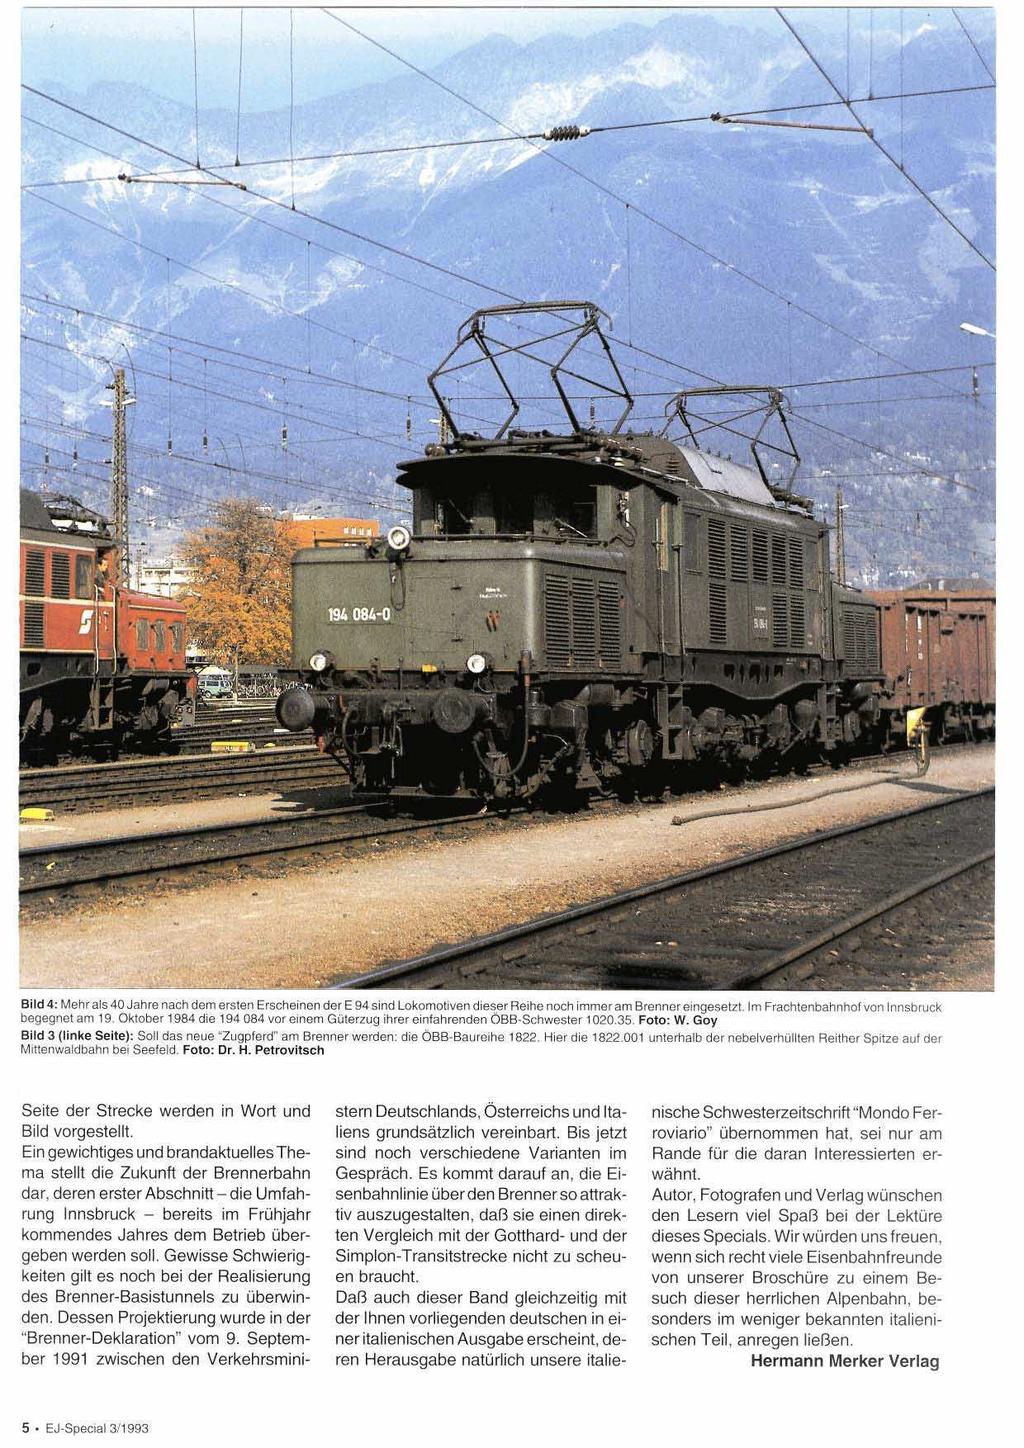 Bild 4: Mehr als 40 Jahre nach dem ersten Erscheinen der E 94 sind Lokomotiven dieser Reihe noch immer am Brennereingeserzr. im Frachtenbahnhof von lnnsbruck begegnet am 19.